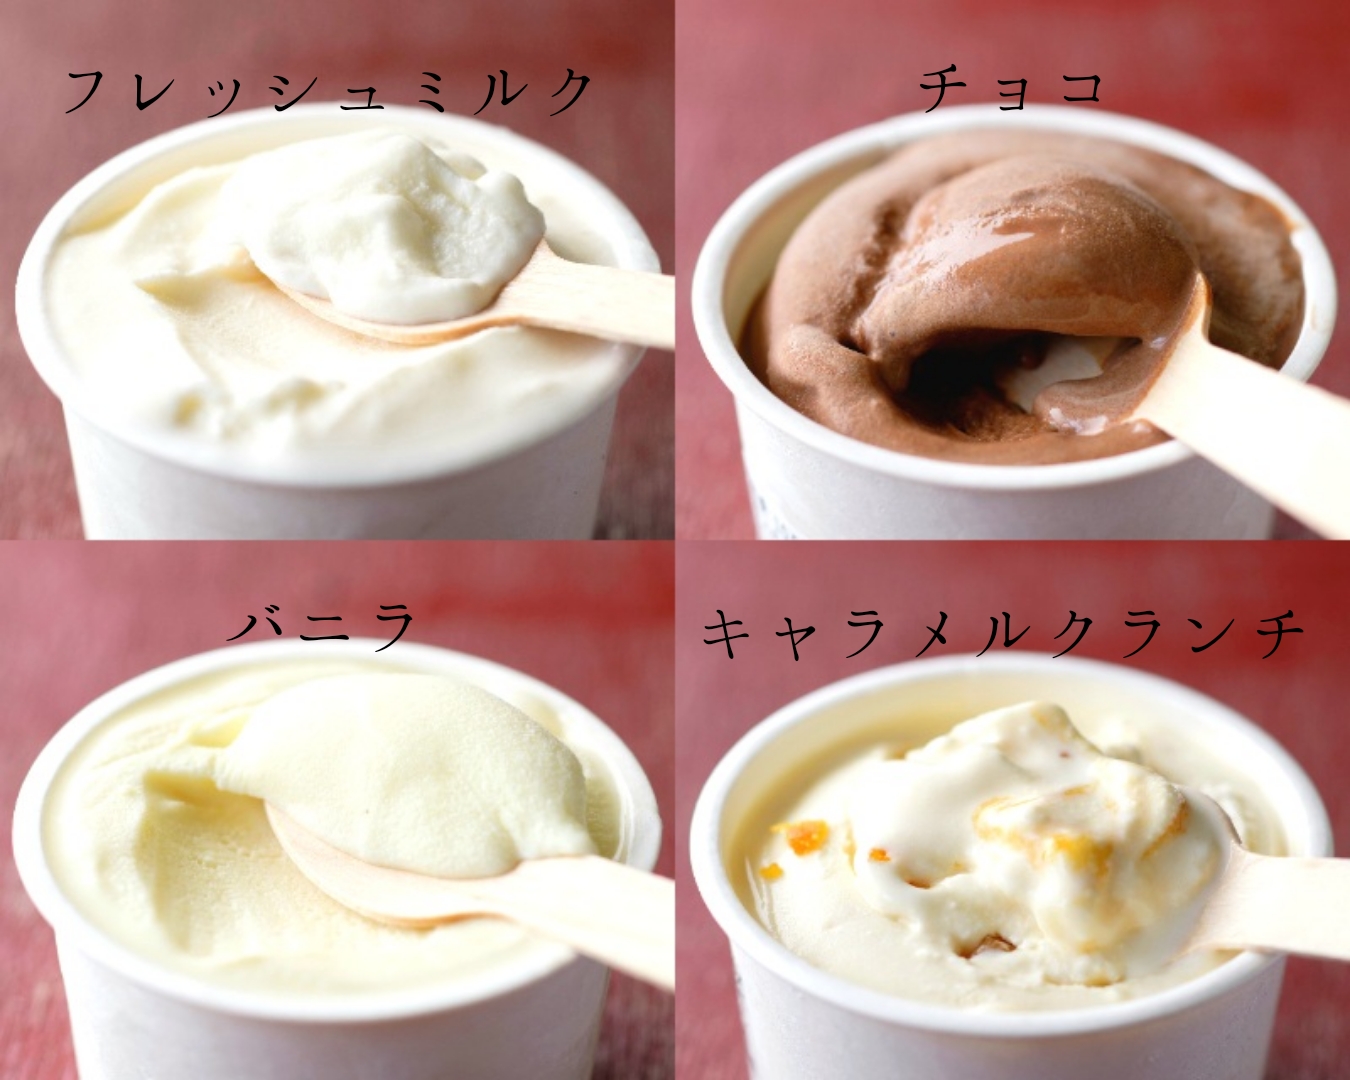 ひらかわ牧場のしぼりたて生乳で作ったアイスクリーム【人気の4種24個入り】